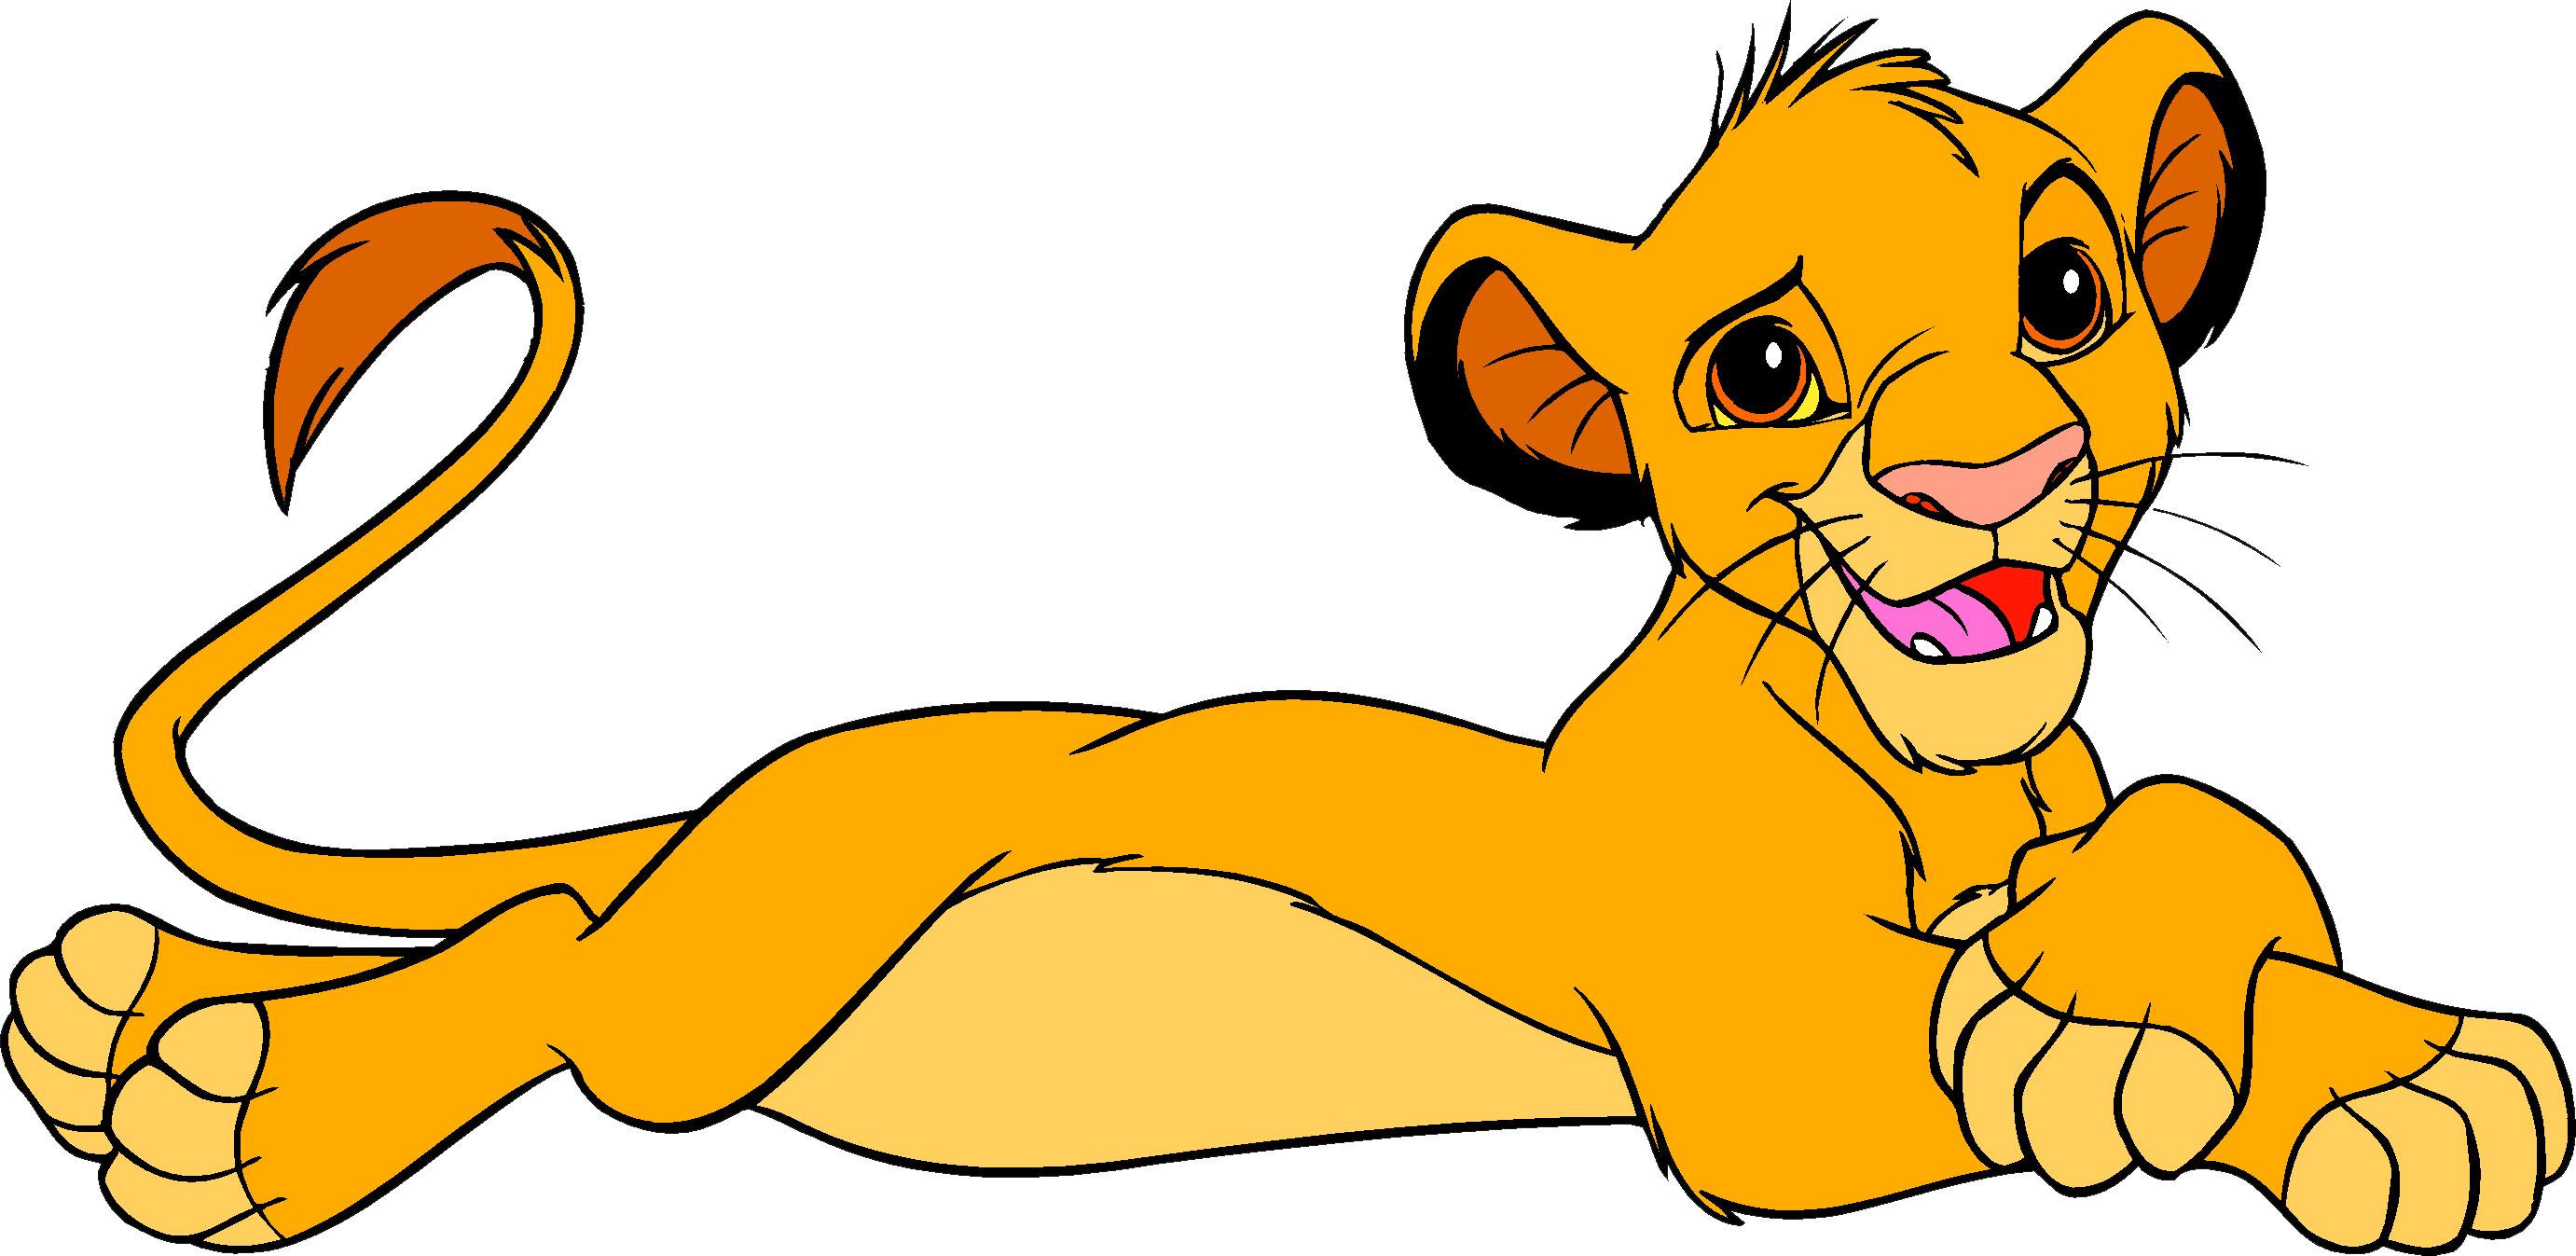 25 Imagens Rei Leão - Simba leão PNG Transparente. Baixe Grátis!